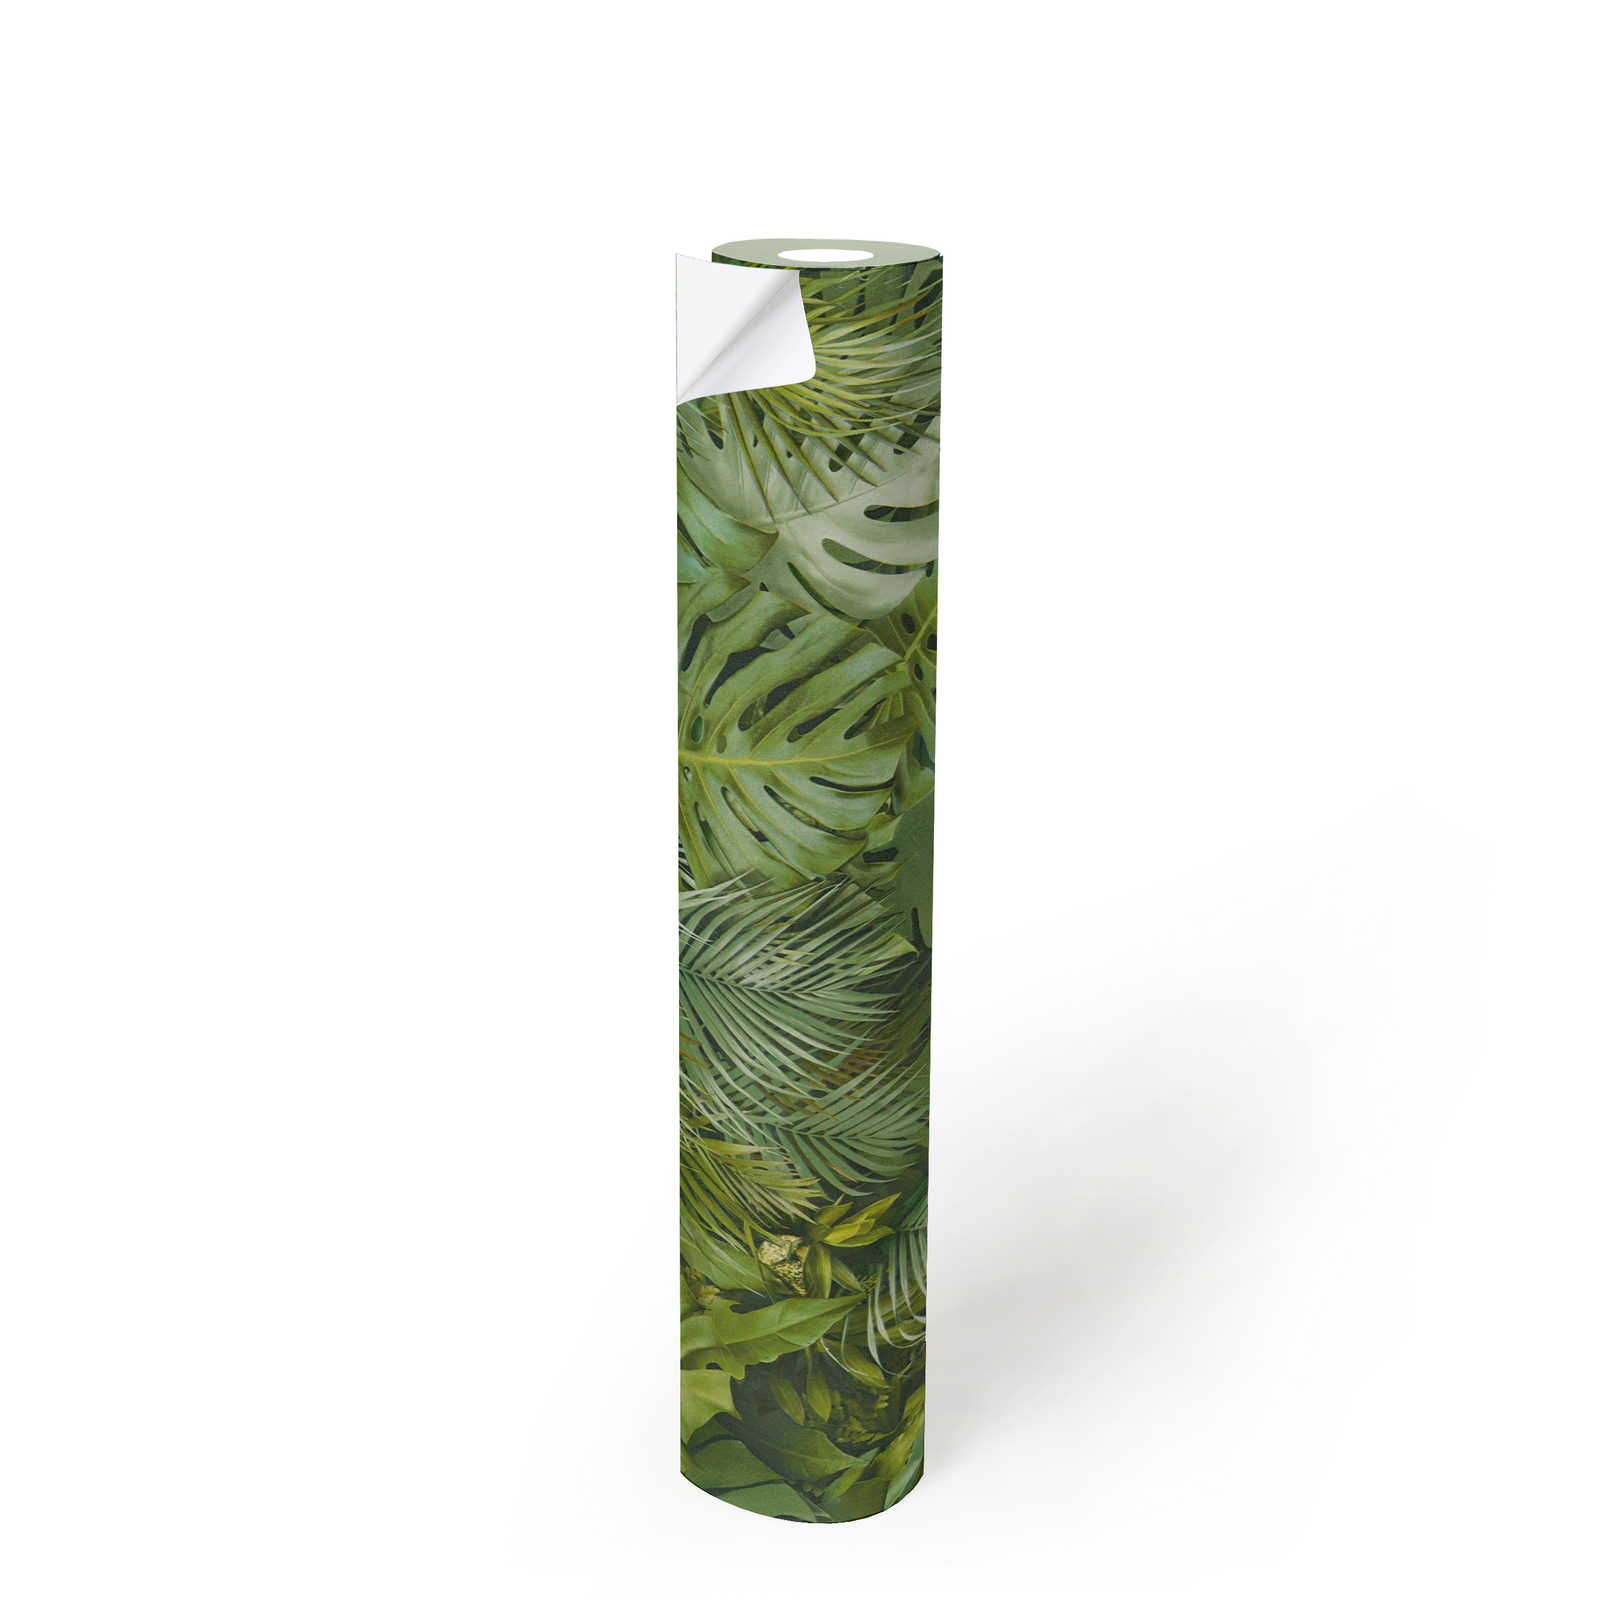             Selbstklebende Tapete | Dschungel Muster in 3D Optik – Grün
        